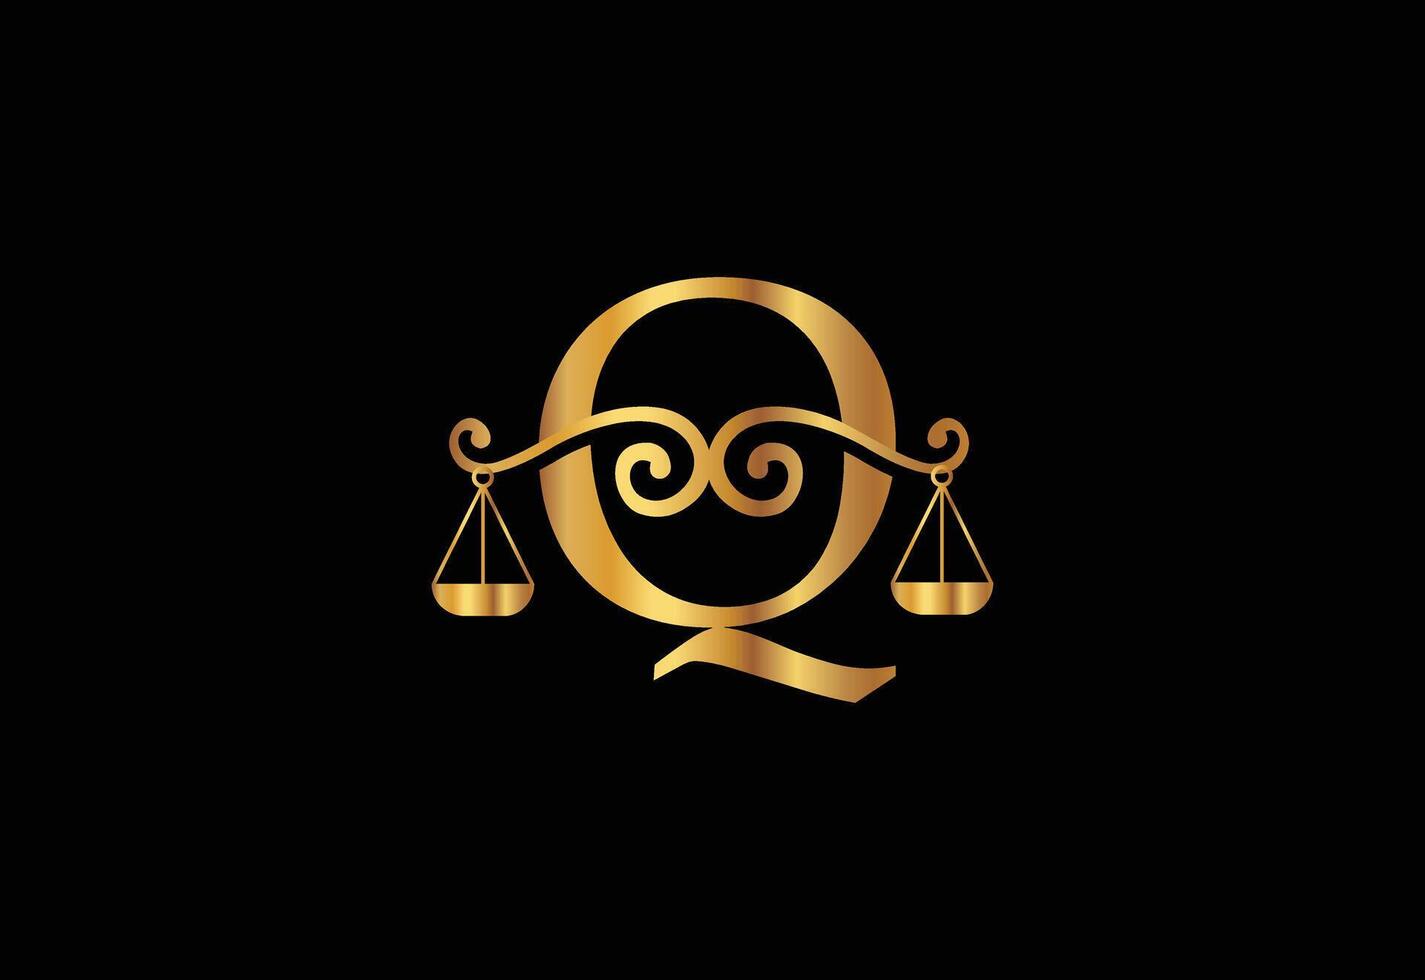 bajo firma logo con último q vector plantilla, justicia logo, igualdad, juicio logo vector ilustración